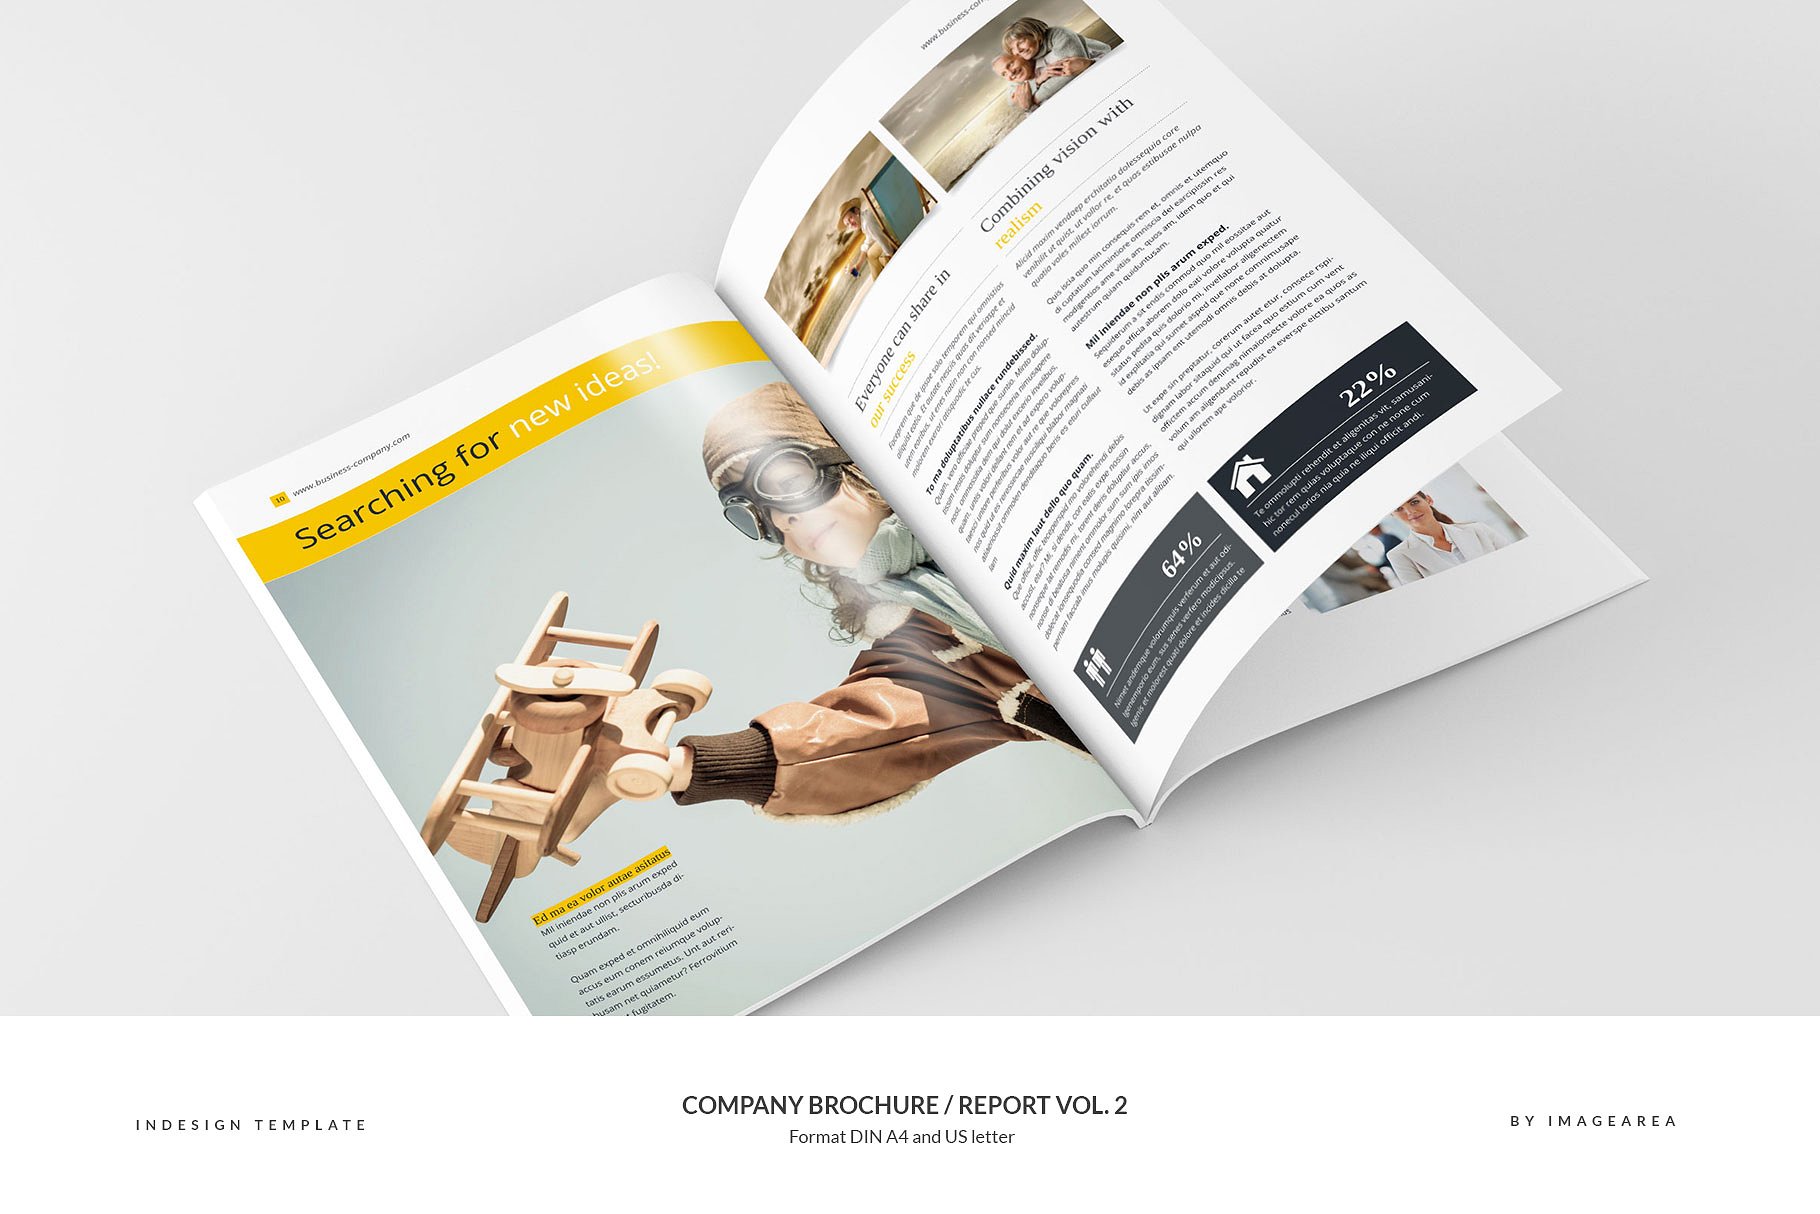 企业品牌宣传画册/企业年报设计模板v2 Company Brochure / Report Vol. 2插图(6)